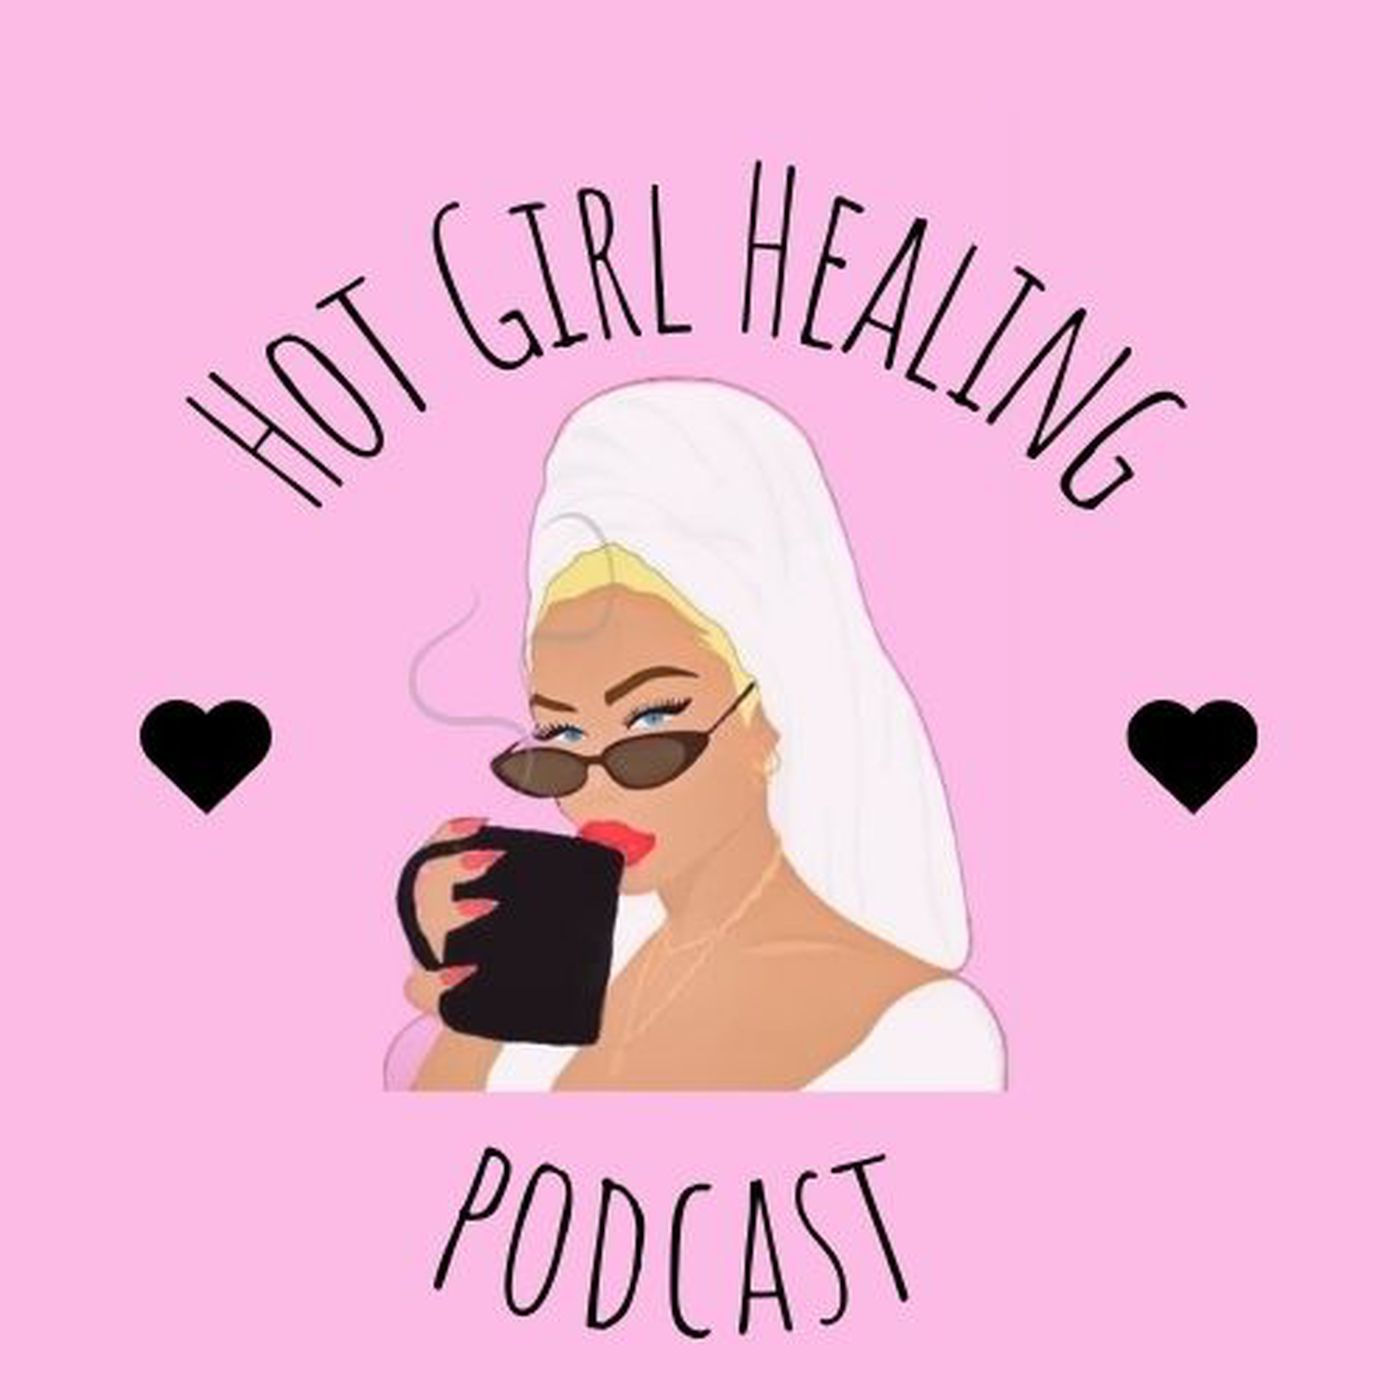 Hot Girl Healing